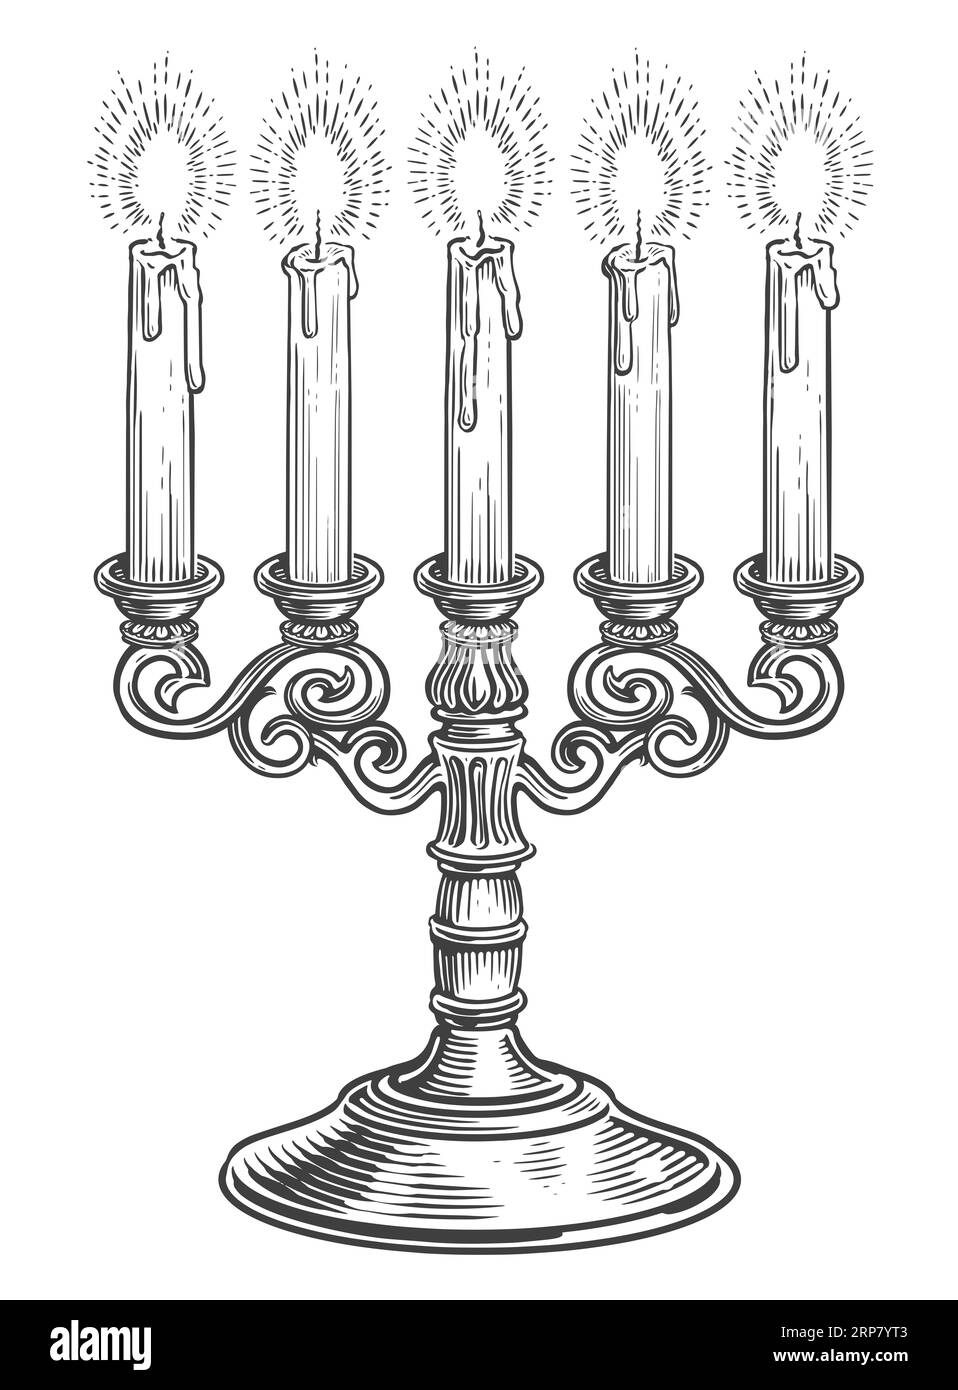 Candélabre avec cinq bougies allumées. Dessin dessiné à la main illustration vintage chandelier Banque D'Images